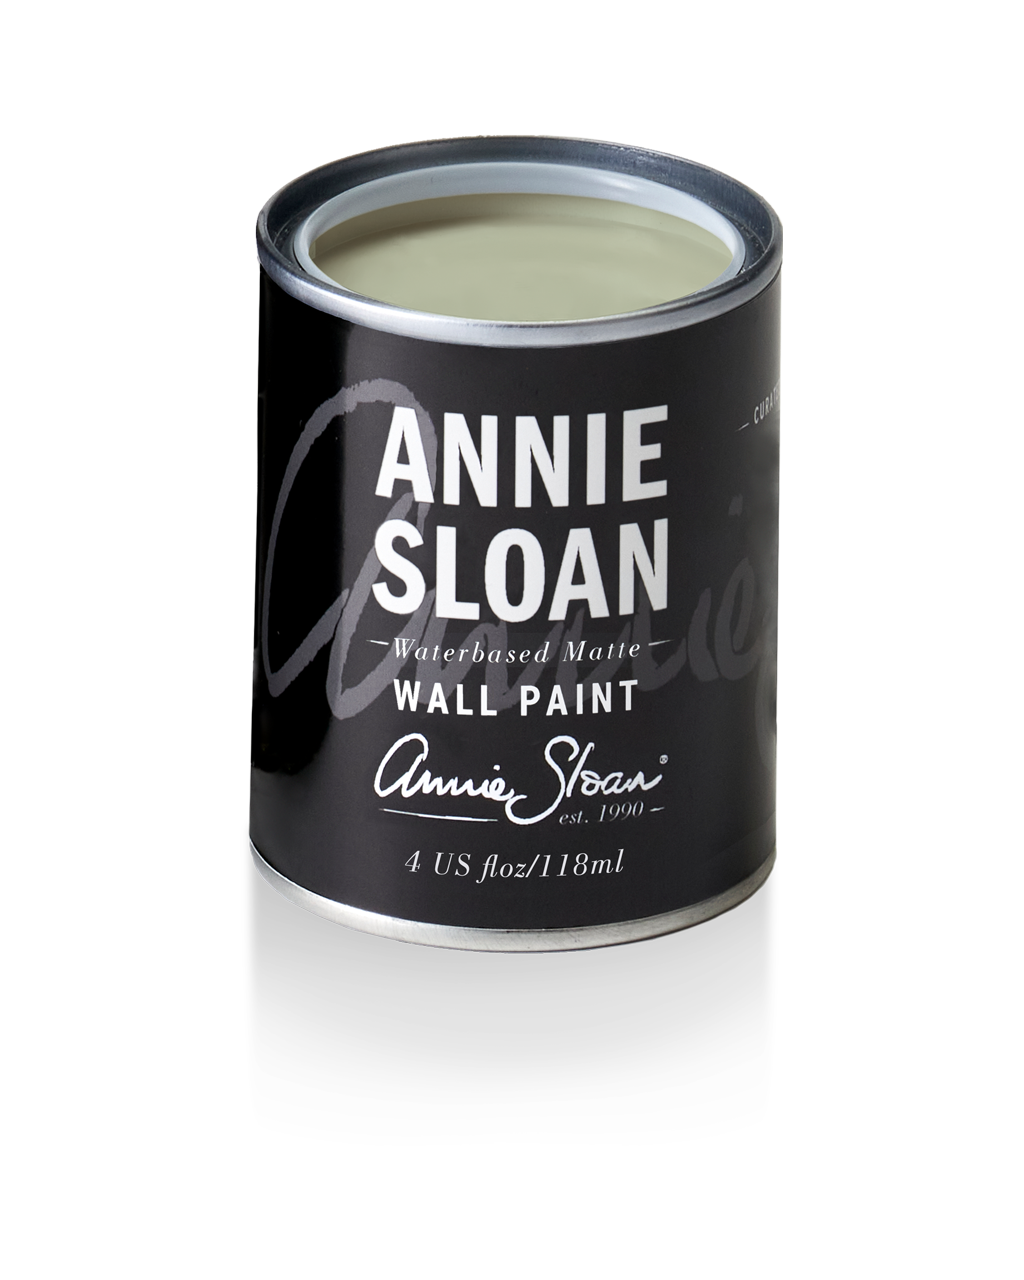 Annie Sloan Terre Verte Wall Paint Tin